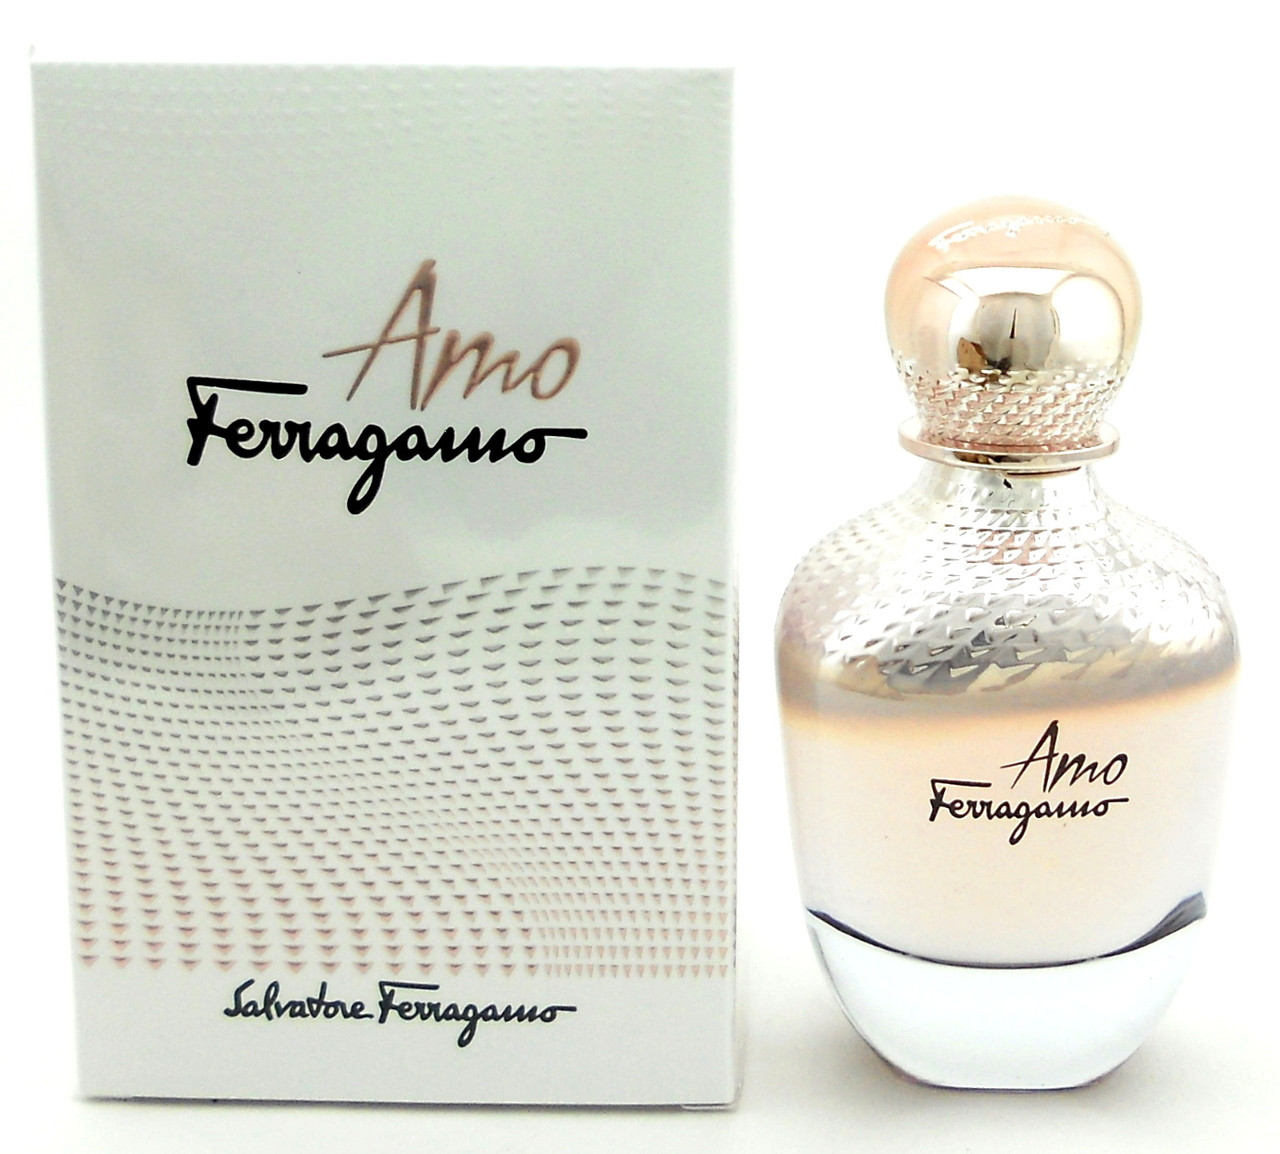 Amo Ferragamo Perfume by Salvatore Ferragamo 1.7 oz.EDP Spray.New in